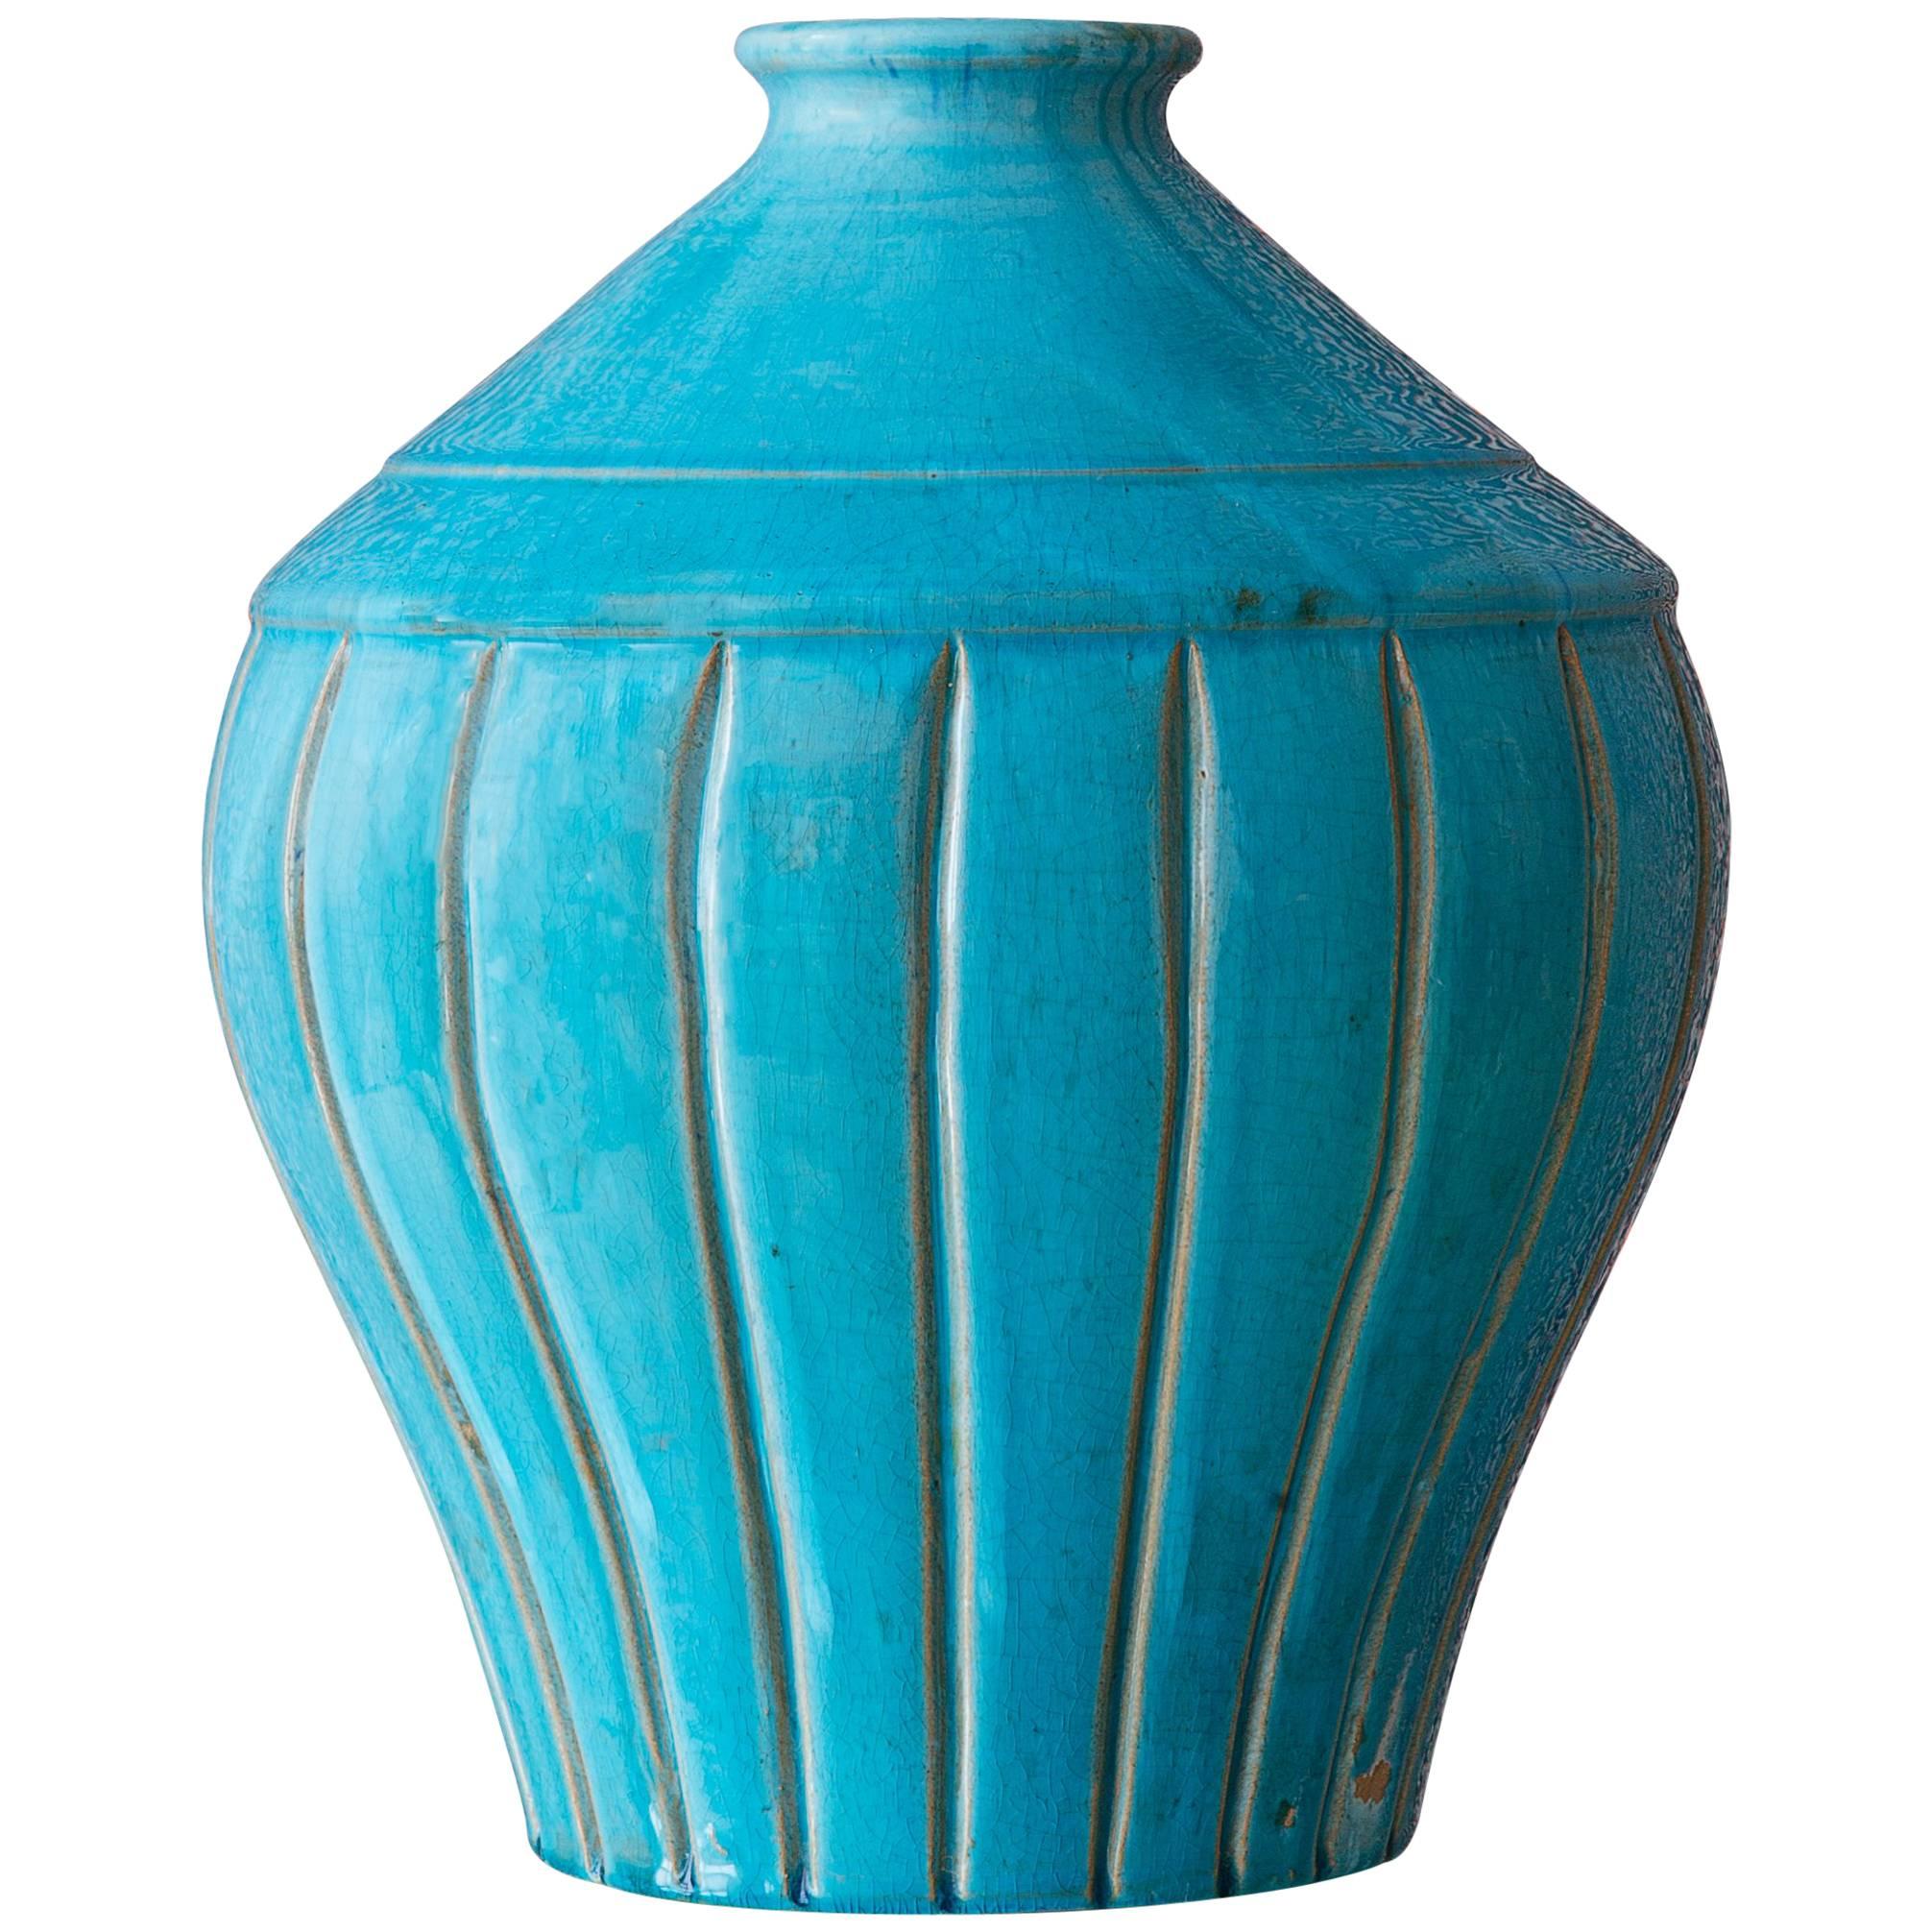 1940s Turquoise Ceramic Vase